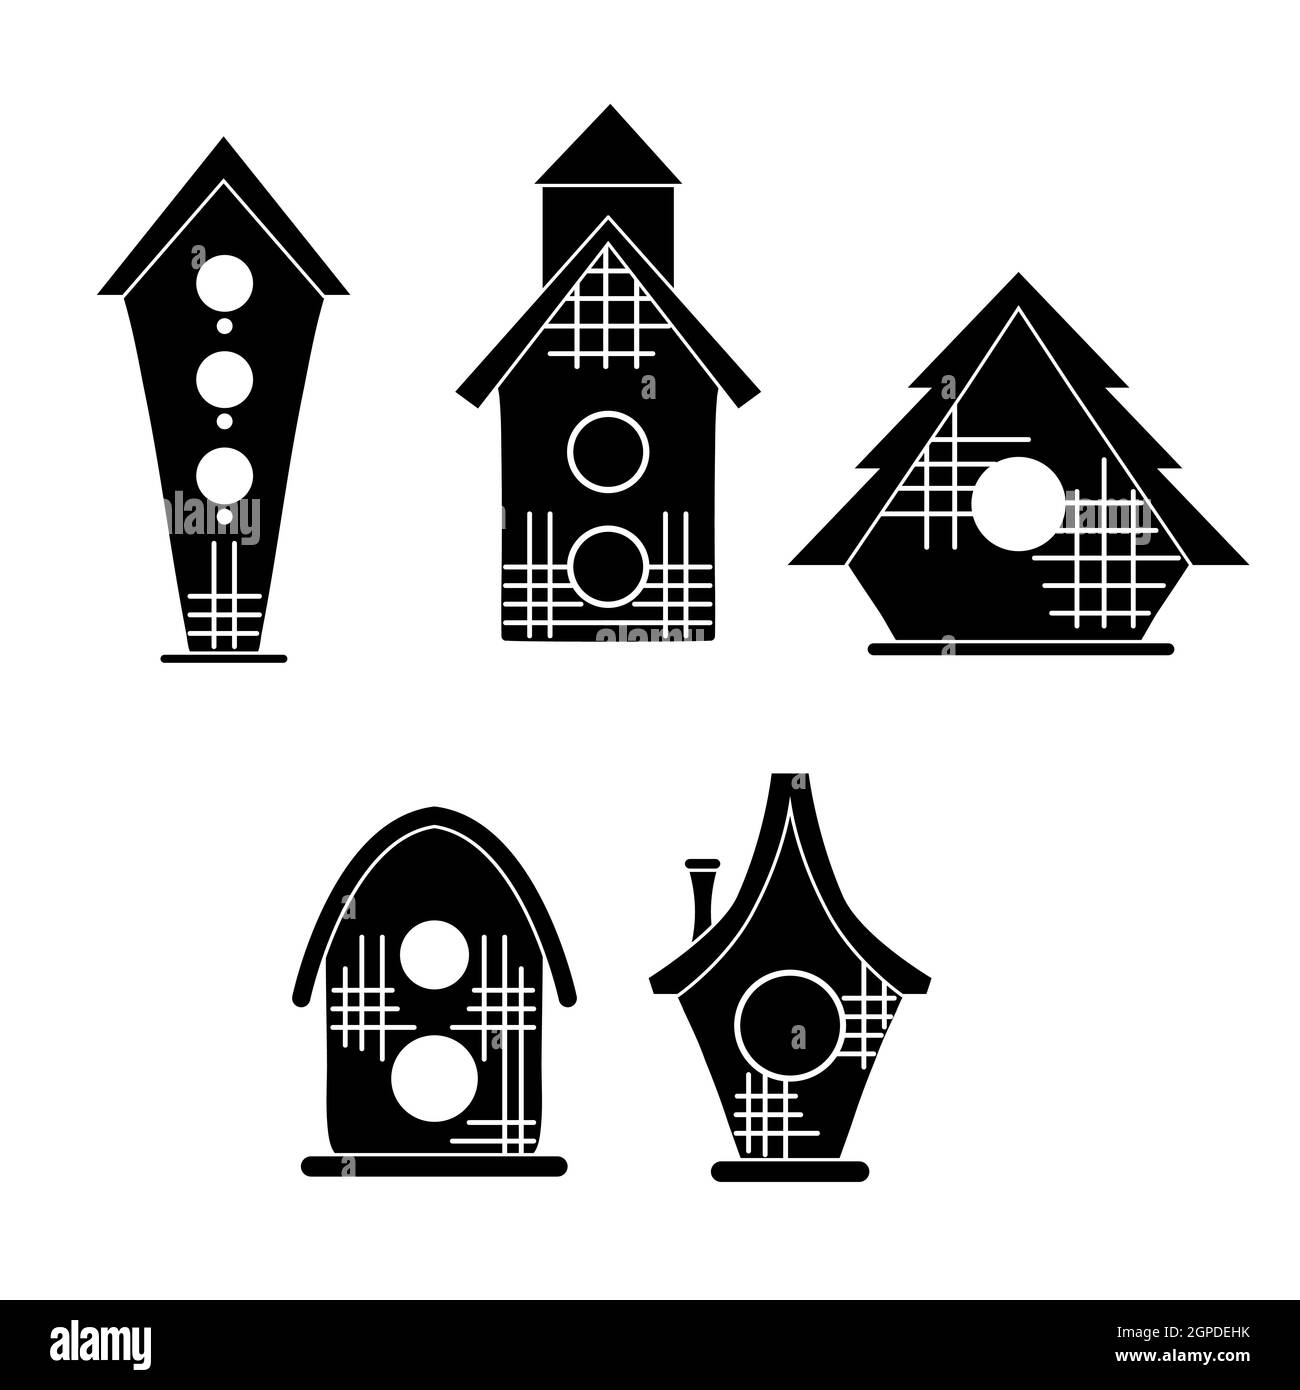 Set von schwarzen Silhouette von einfachen Vogelhäusern auf weißem Hintergrund. Vektorgrafik Illustration von kleinen Häusern. Ikone mit geometrischen Cartoon-Vogelhäusern Stock Vektor